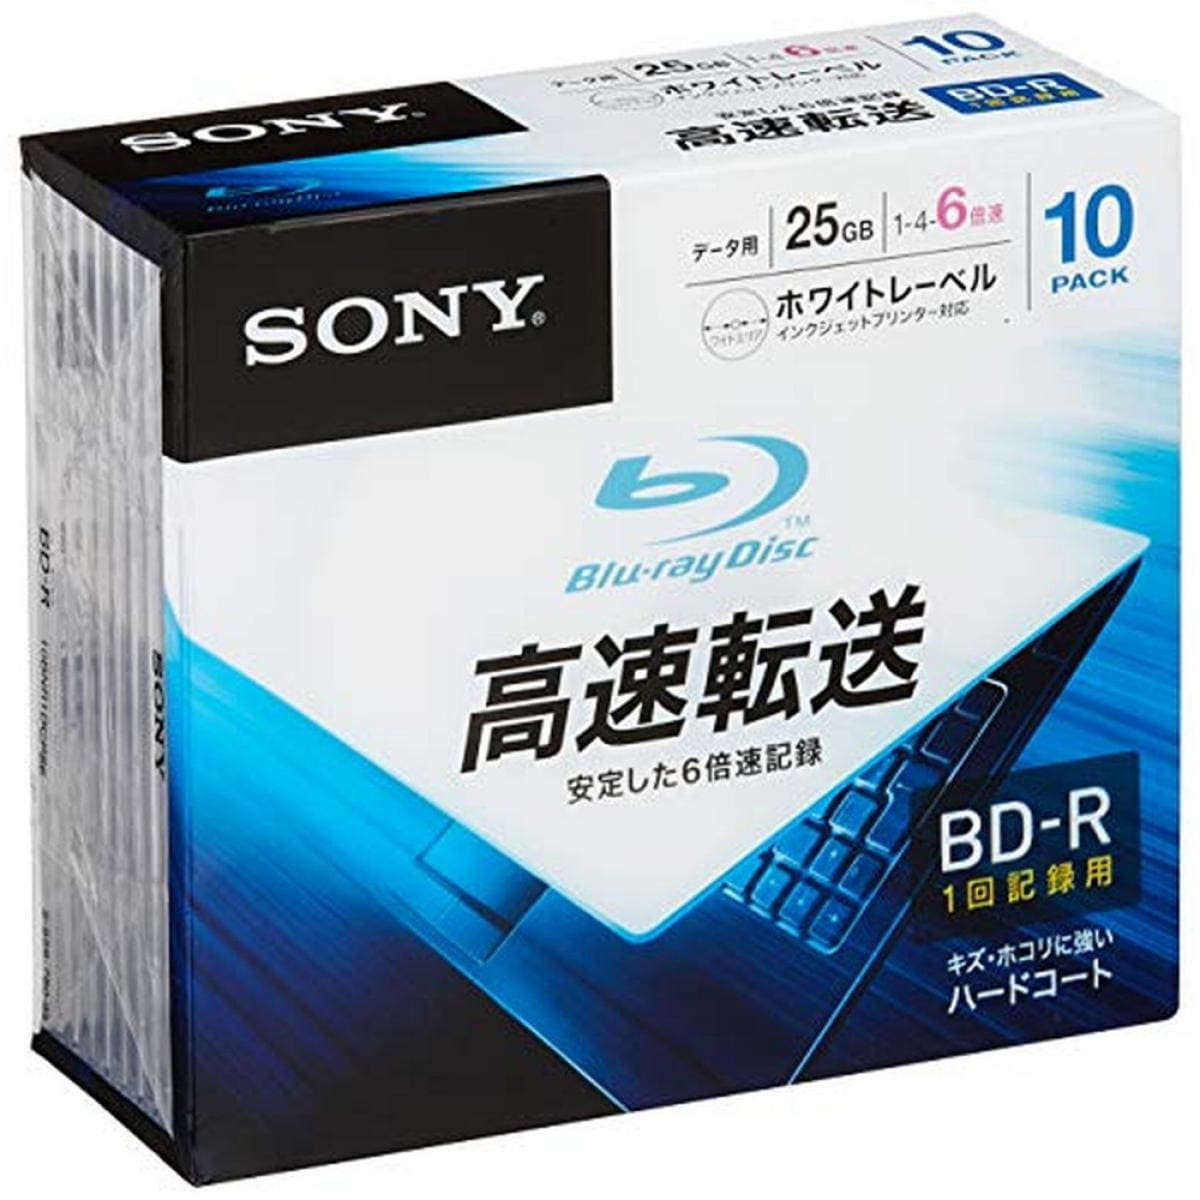 ソニーブルーレイディスクBD-R 25GB 5枚入り✖️10個セット